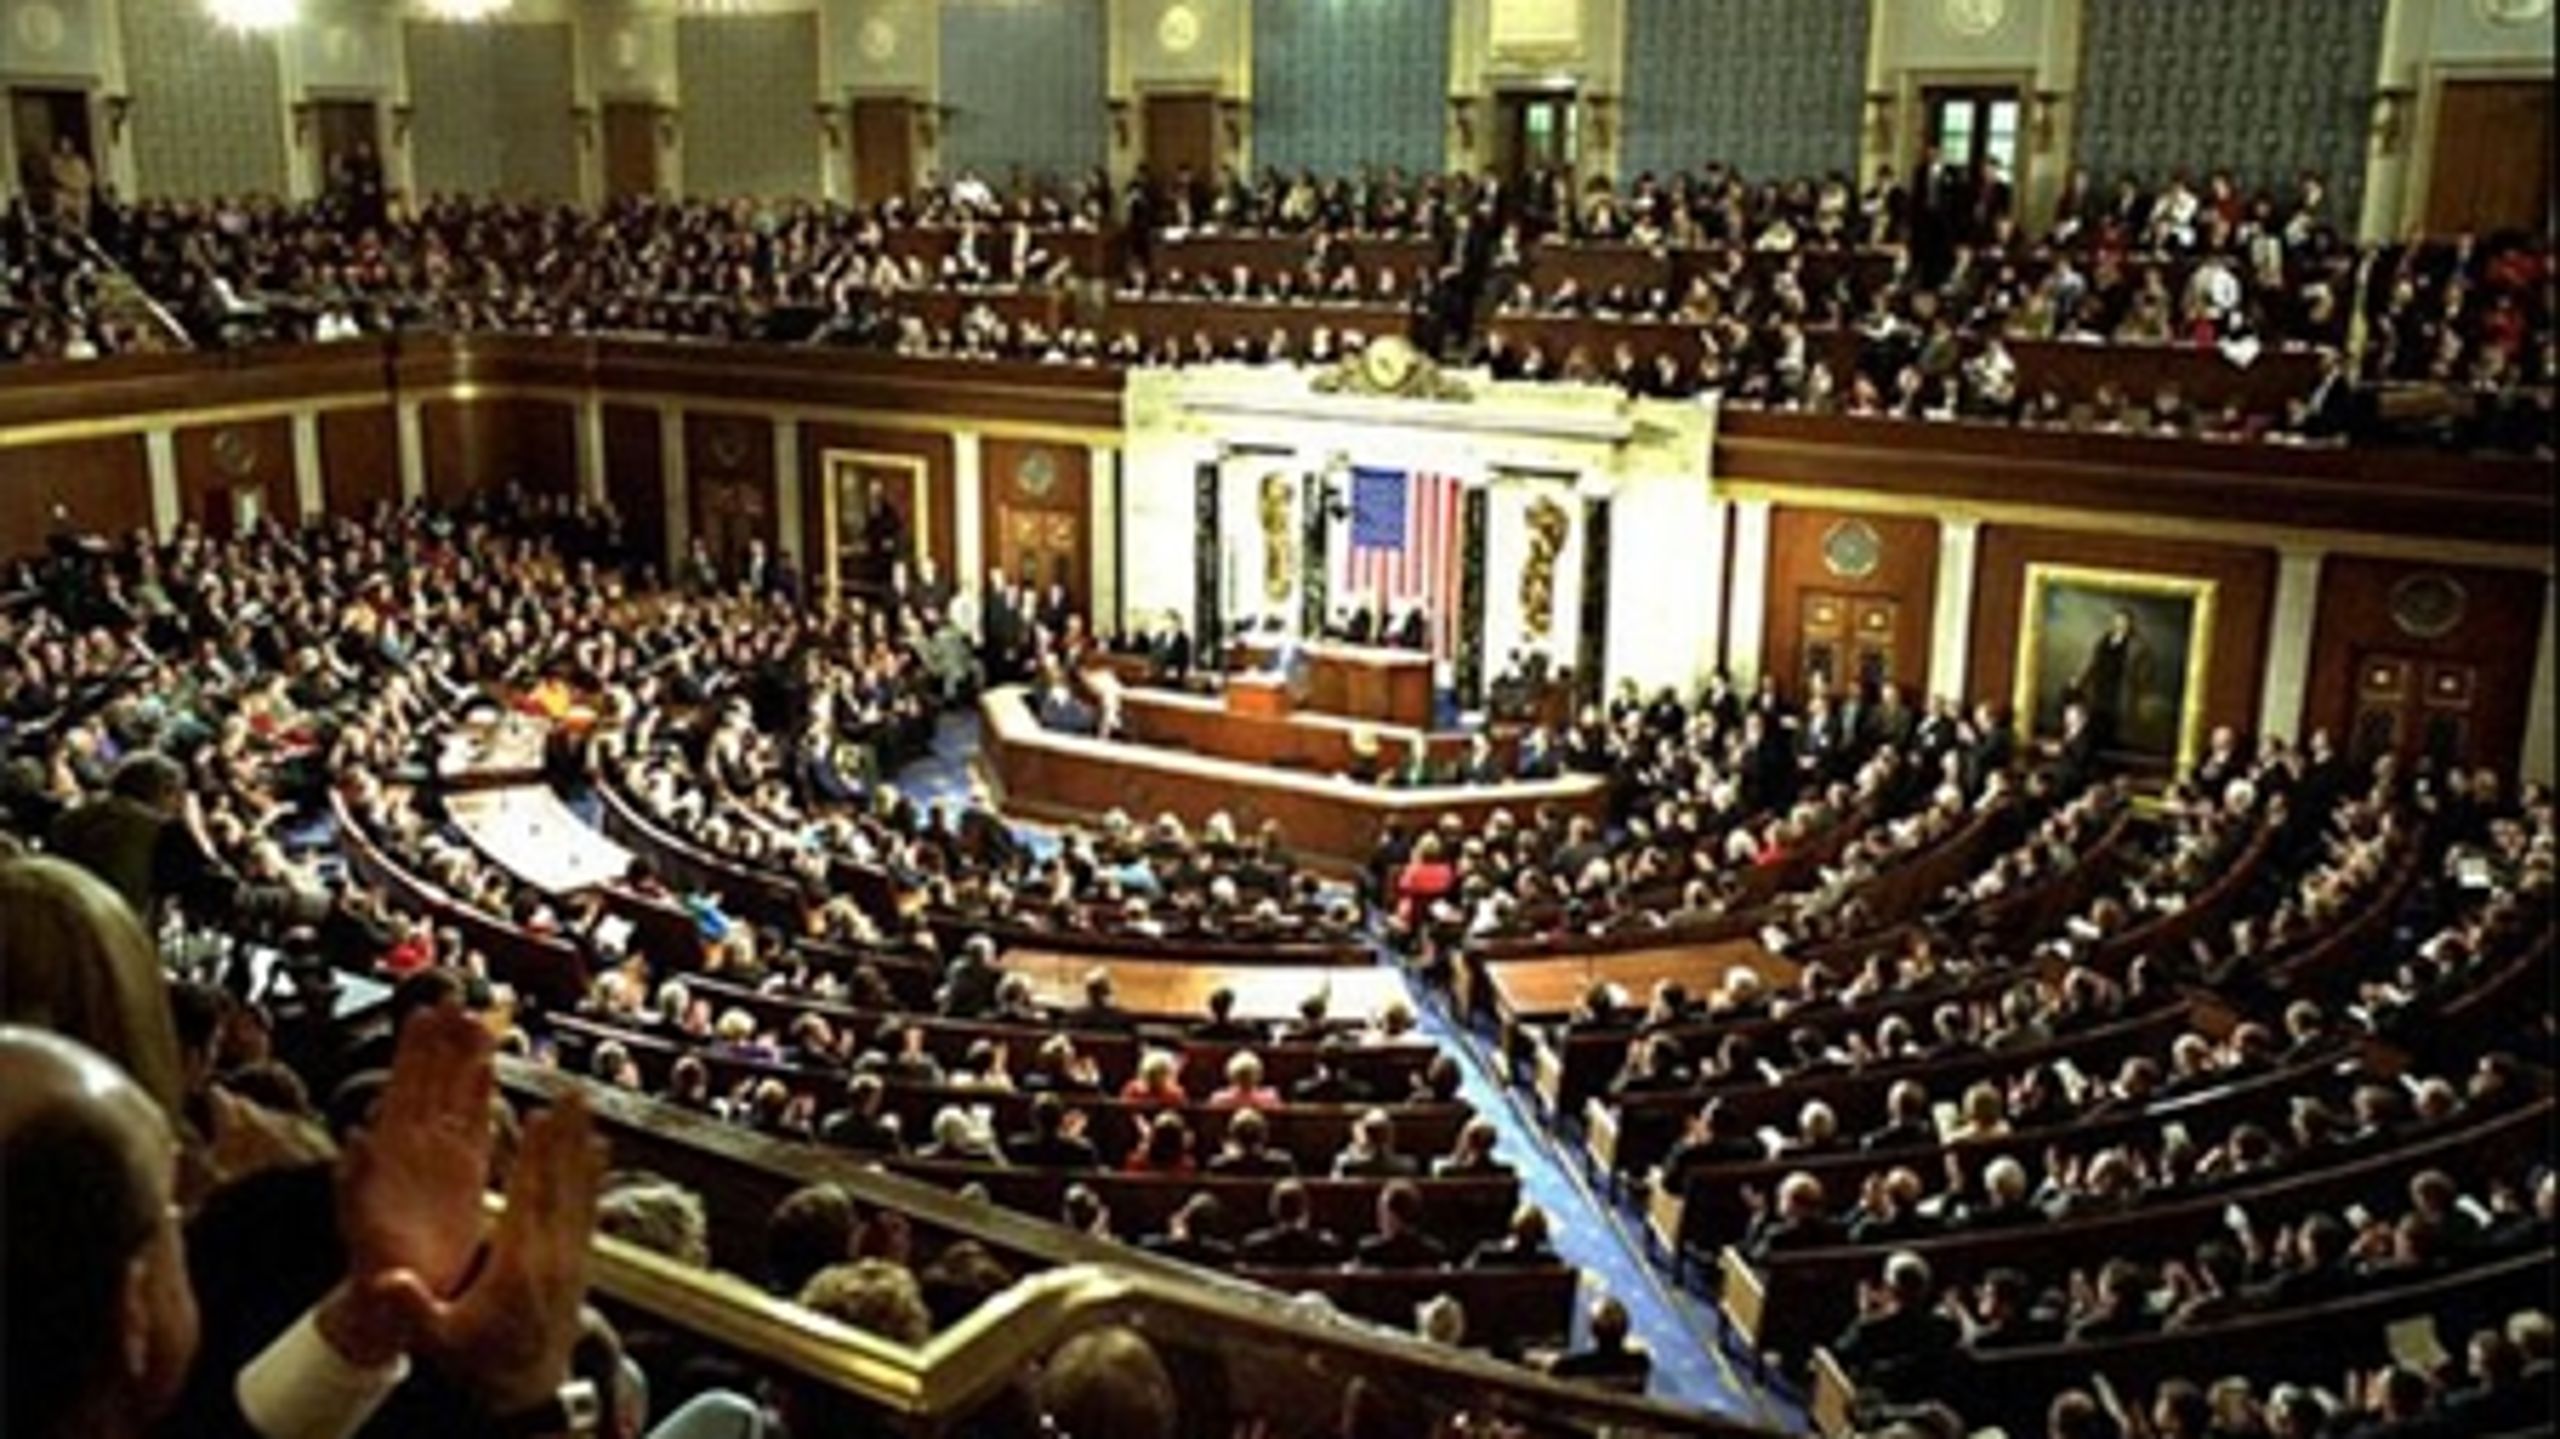 Den amerikanske Kongres, som er den lovgivende magt i USA, består af to kamre: Senatet og Repræsentanternes Hus.